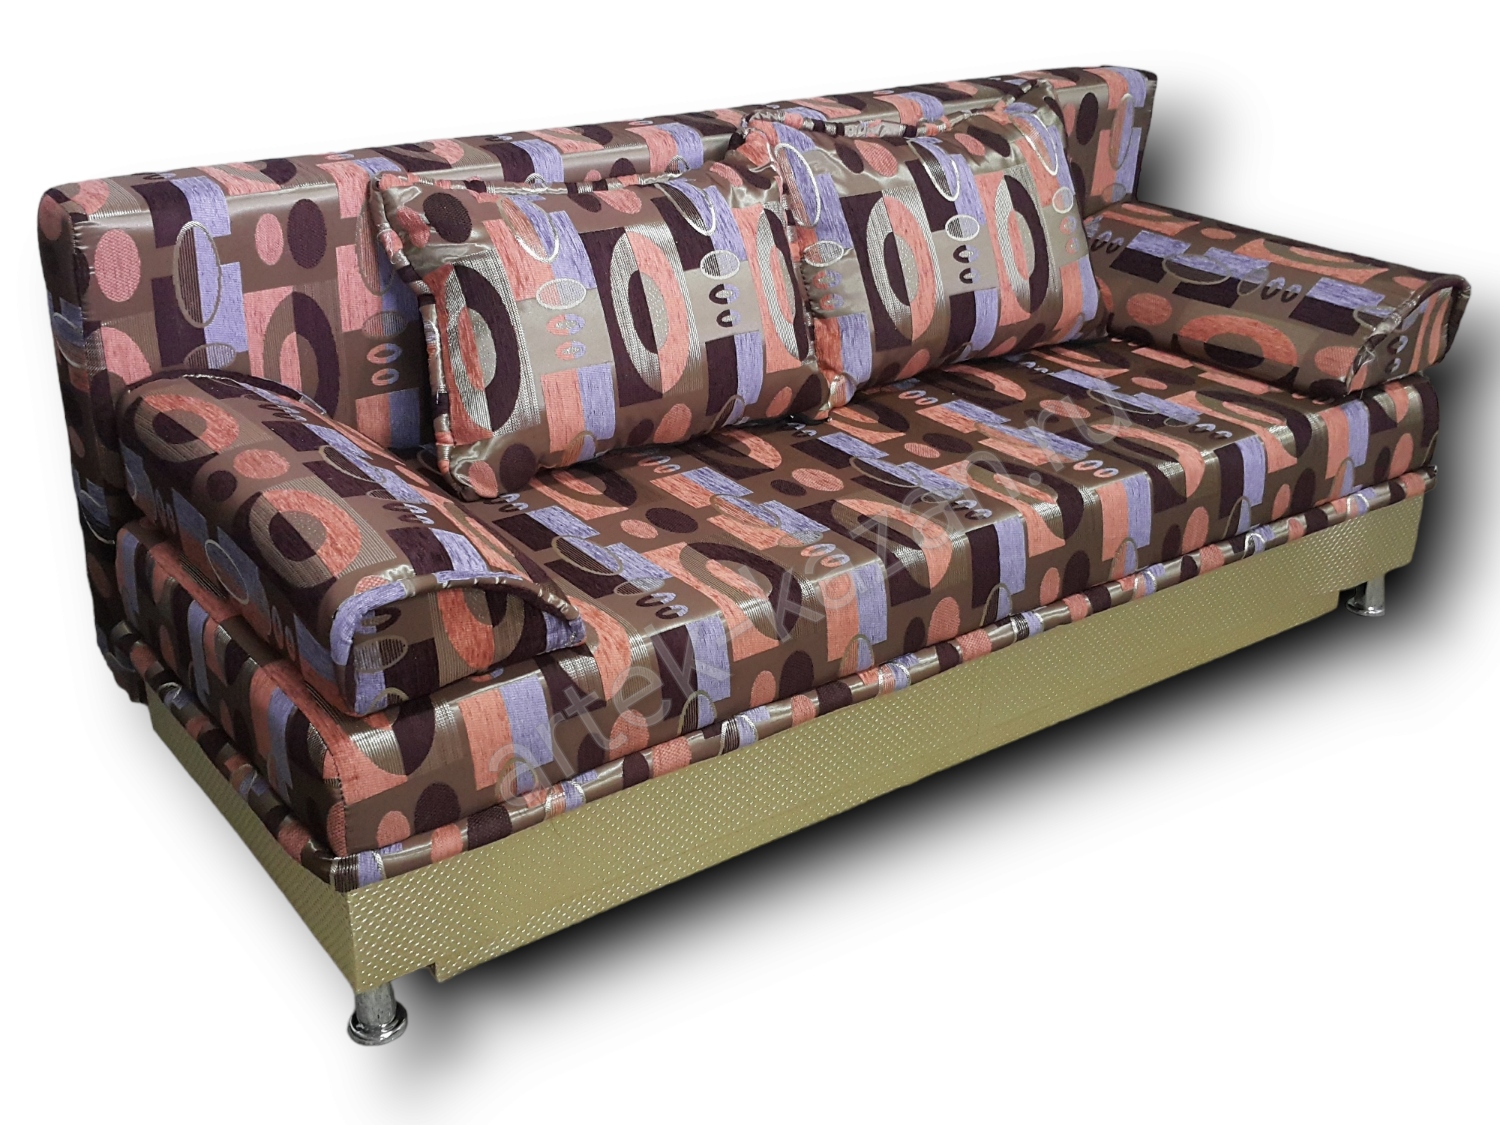 диван еврокнижка Эконом фото № 41. Купить недорогой диван по низкой цене от производителя можно у нас.